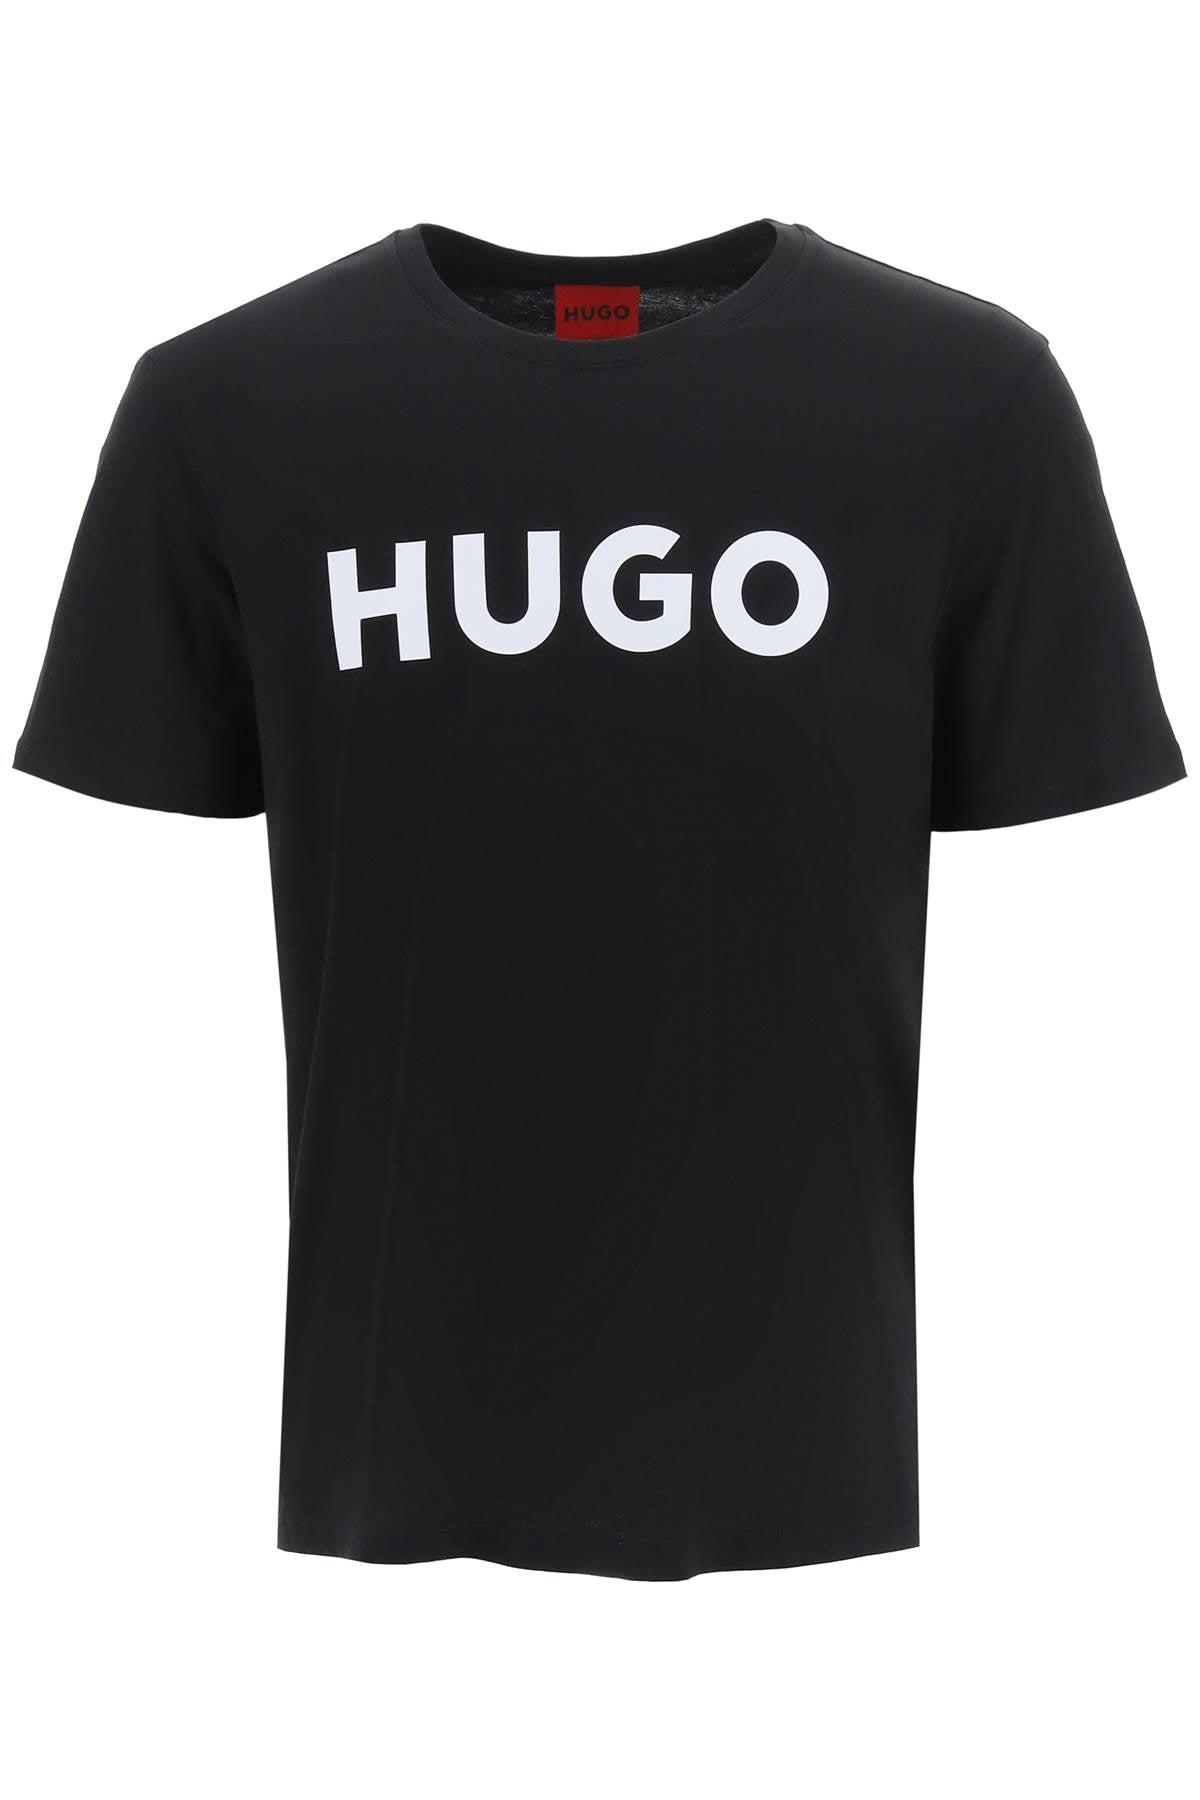 Hugo dulivio logo t-shirt Black-T-Shirt-Hugo-Black-S-Urbanheer